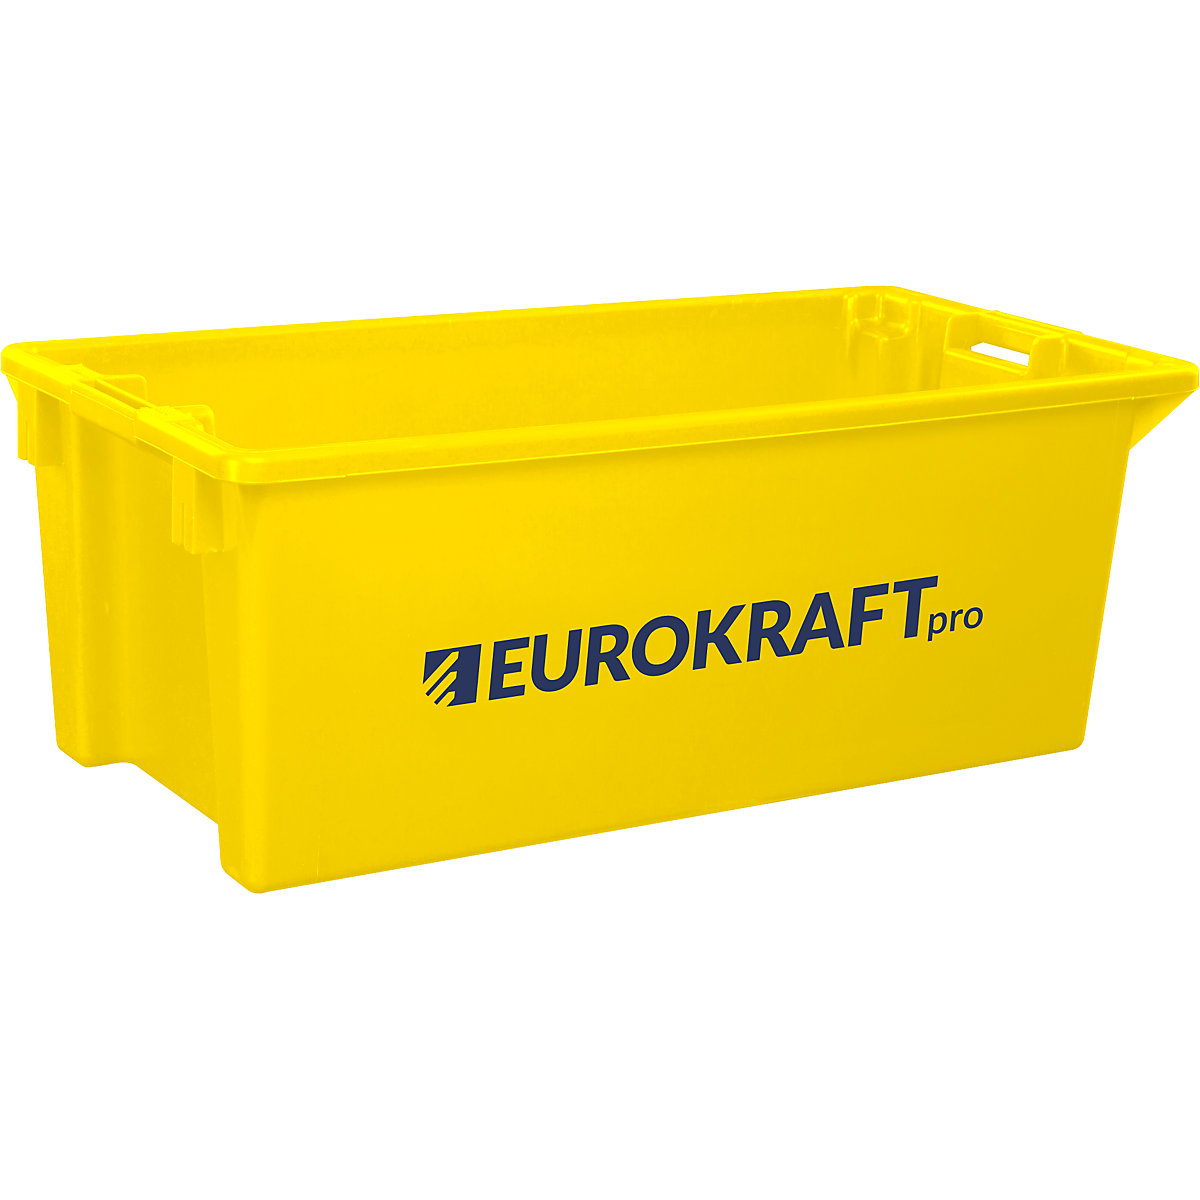 Recipiente empilhável giratório em polipropileno próprio para alimentos – eurokraft pro, capacidade 13 litros, UE 4 unid., paredes e fundo fechados, amarelo